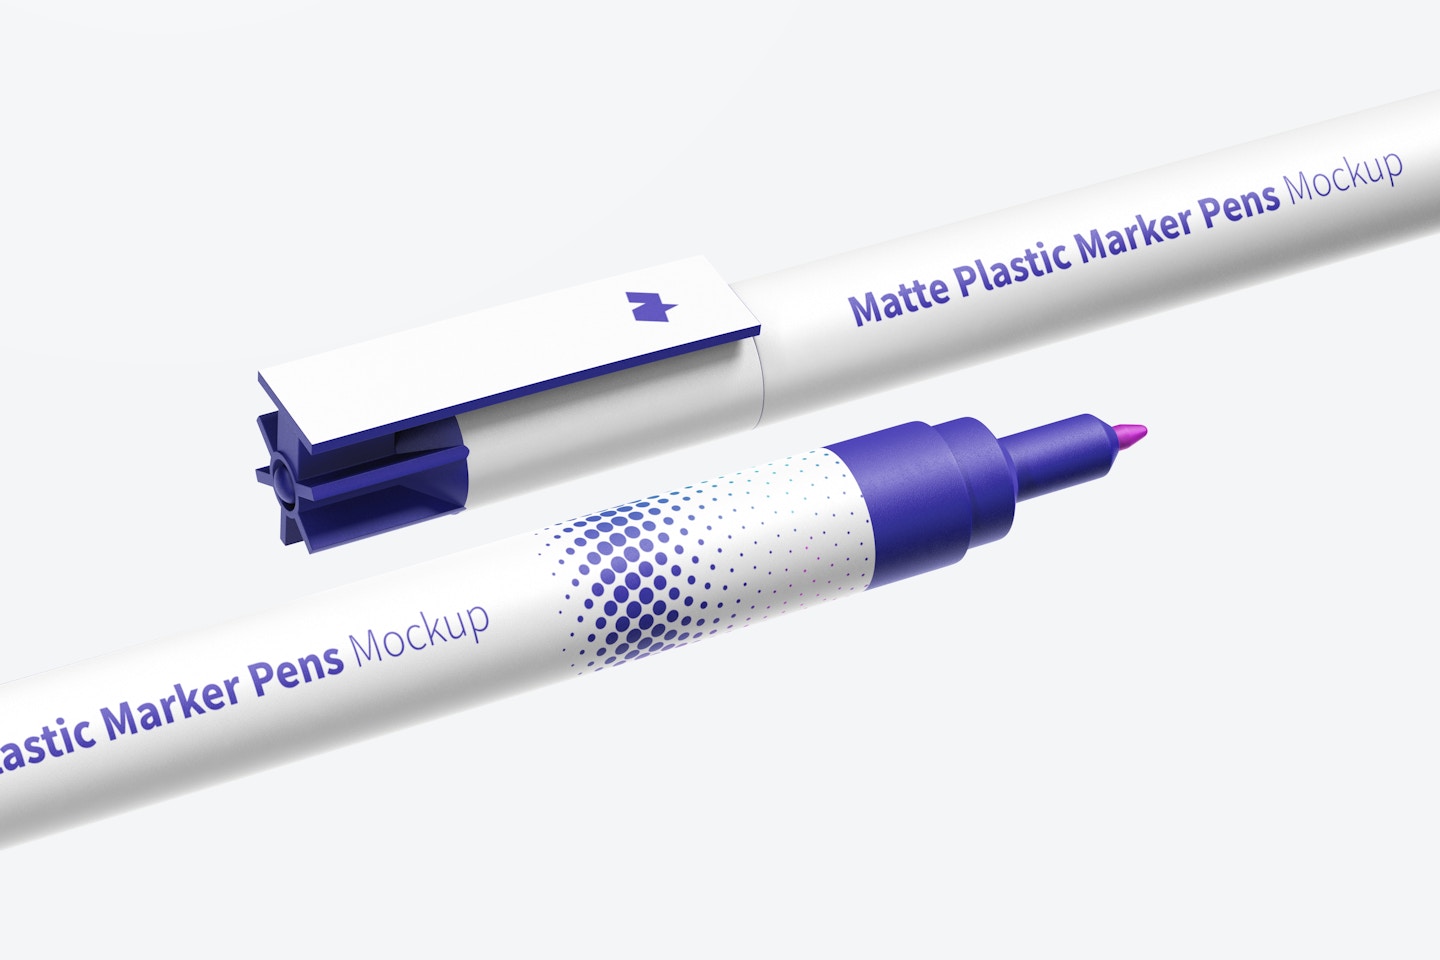 Matte Plastic Marker Pens Mockup